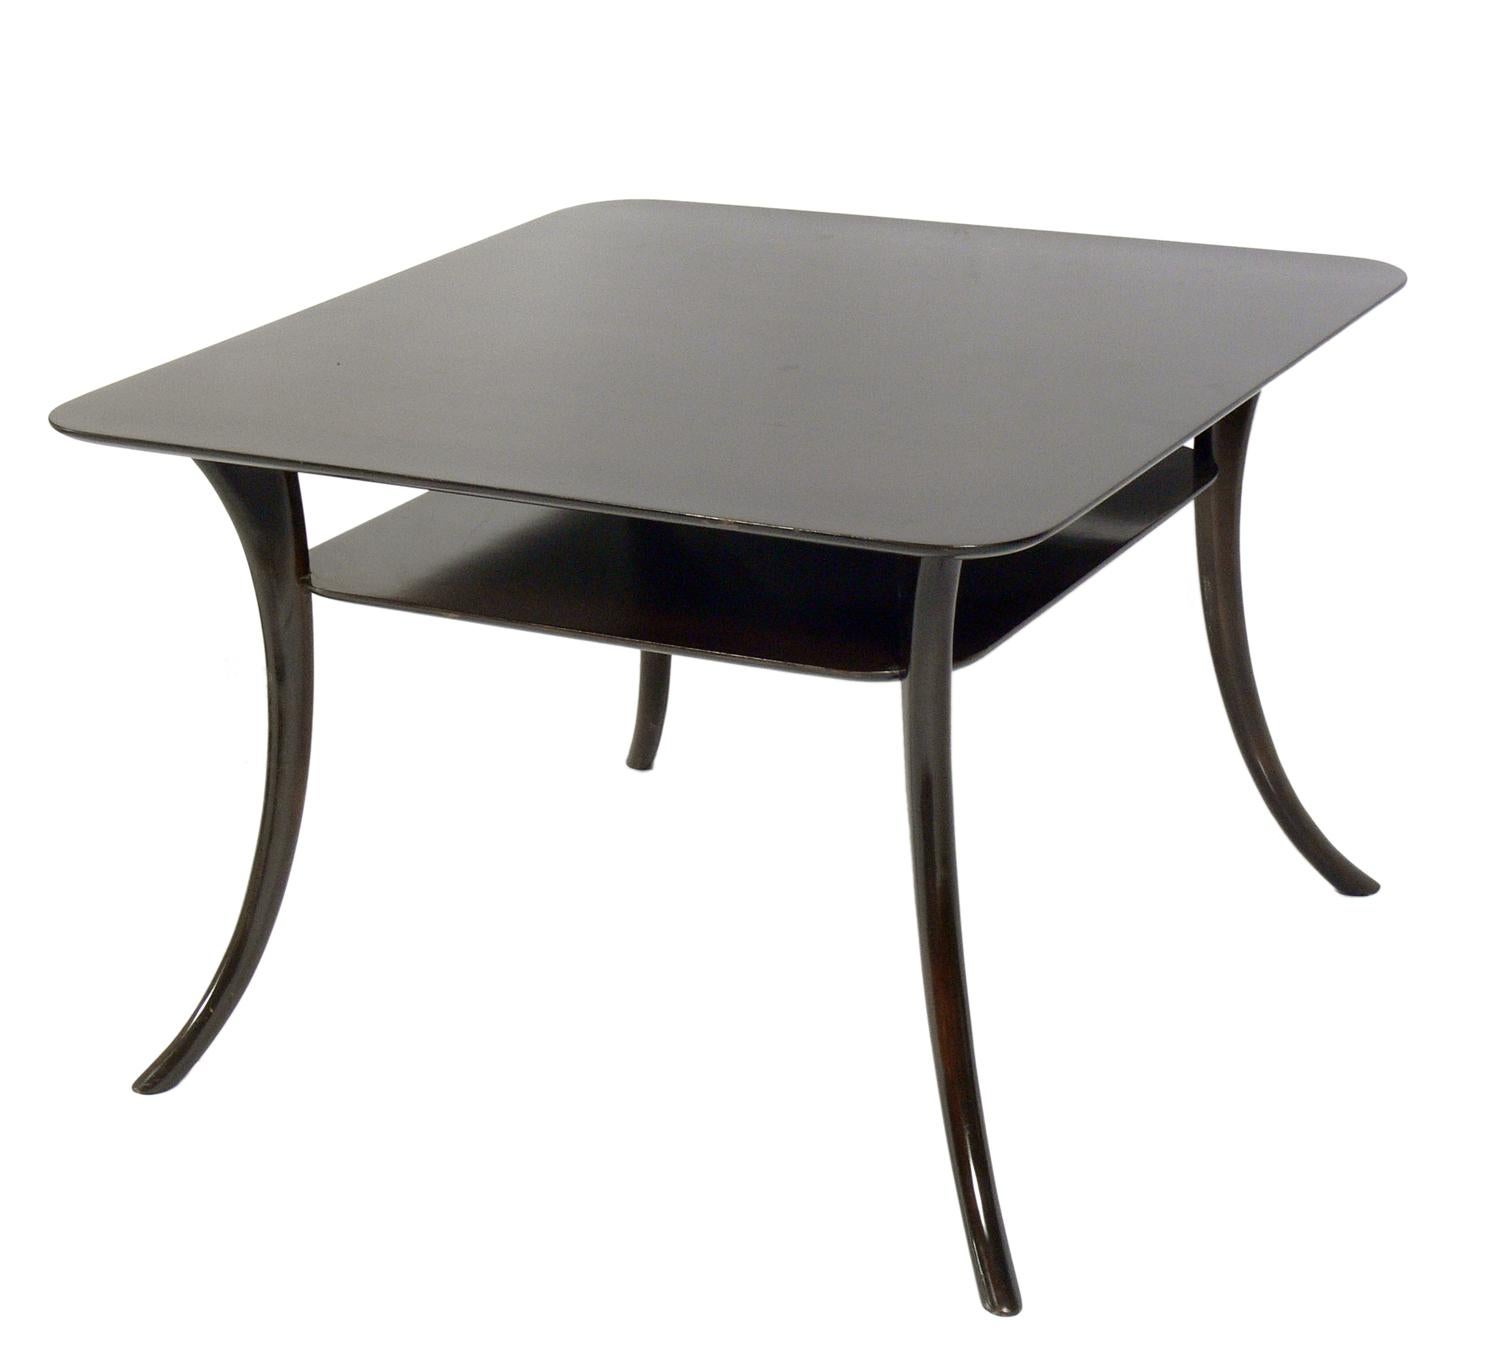 Beistelltisch mit gespreizten Beinen, entworfen von T.H. Robsjohn Gibbings für Widdicomb, amerikanisch, ca. 1950er Jahre. Skulpturale Form der gespreizten Beine und schöne Maserung der Tischplatte. Dieser Tisch hat eine vielseitige Größe und kann